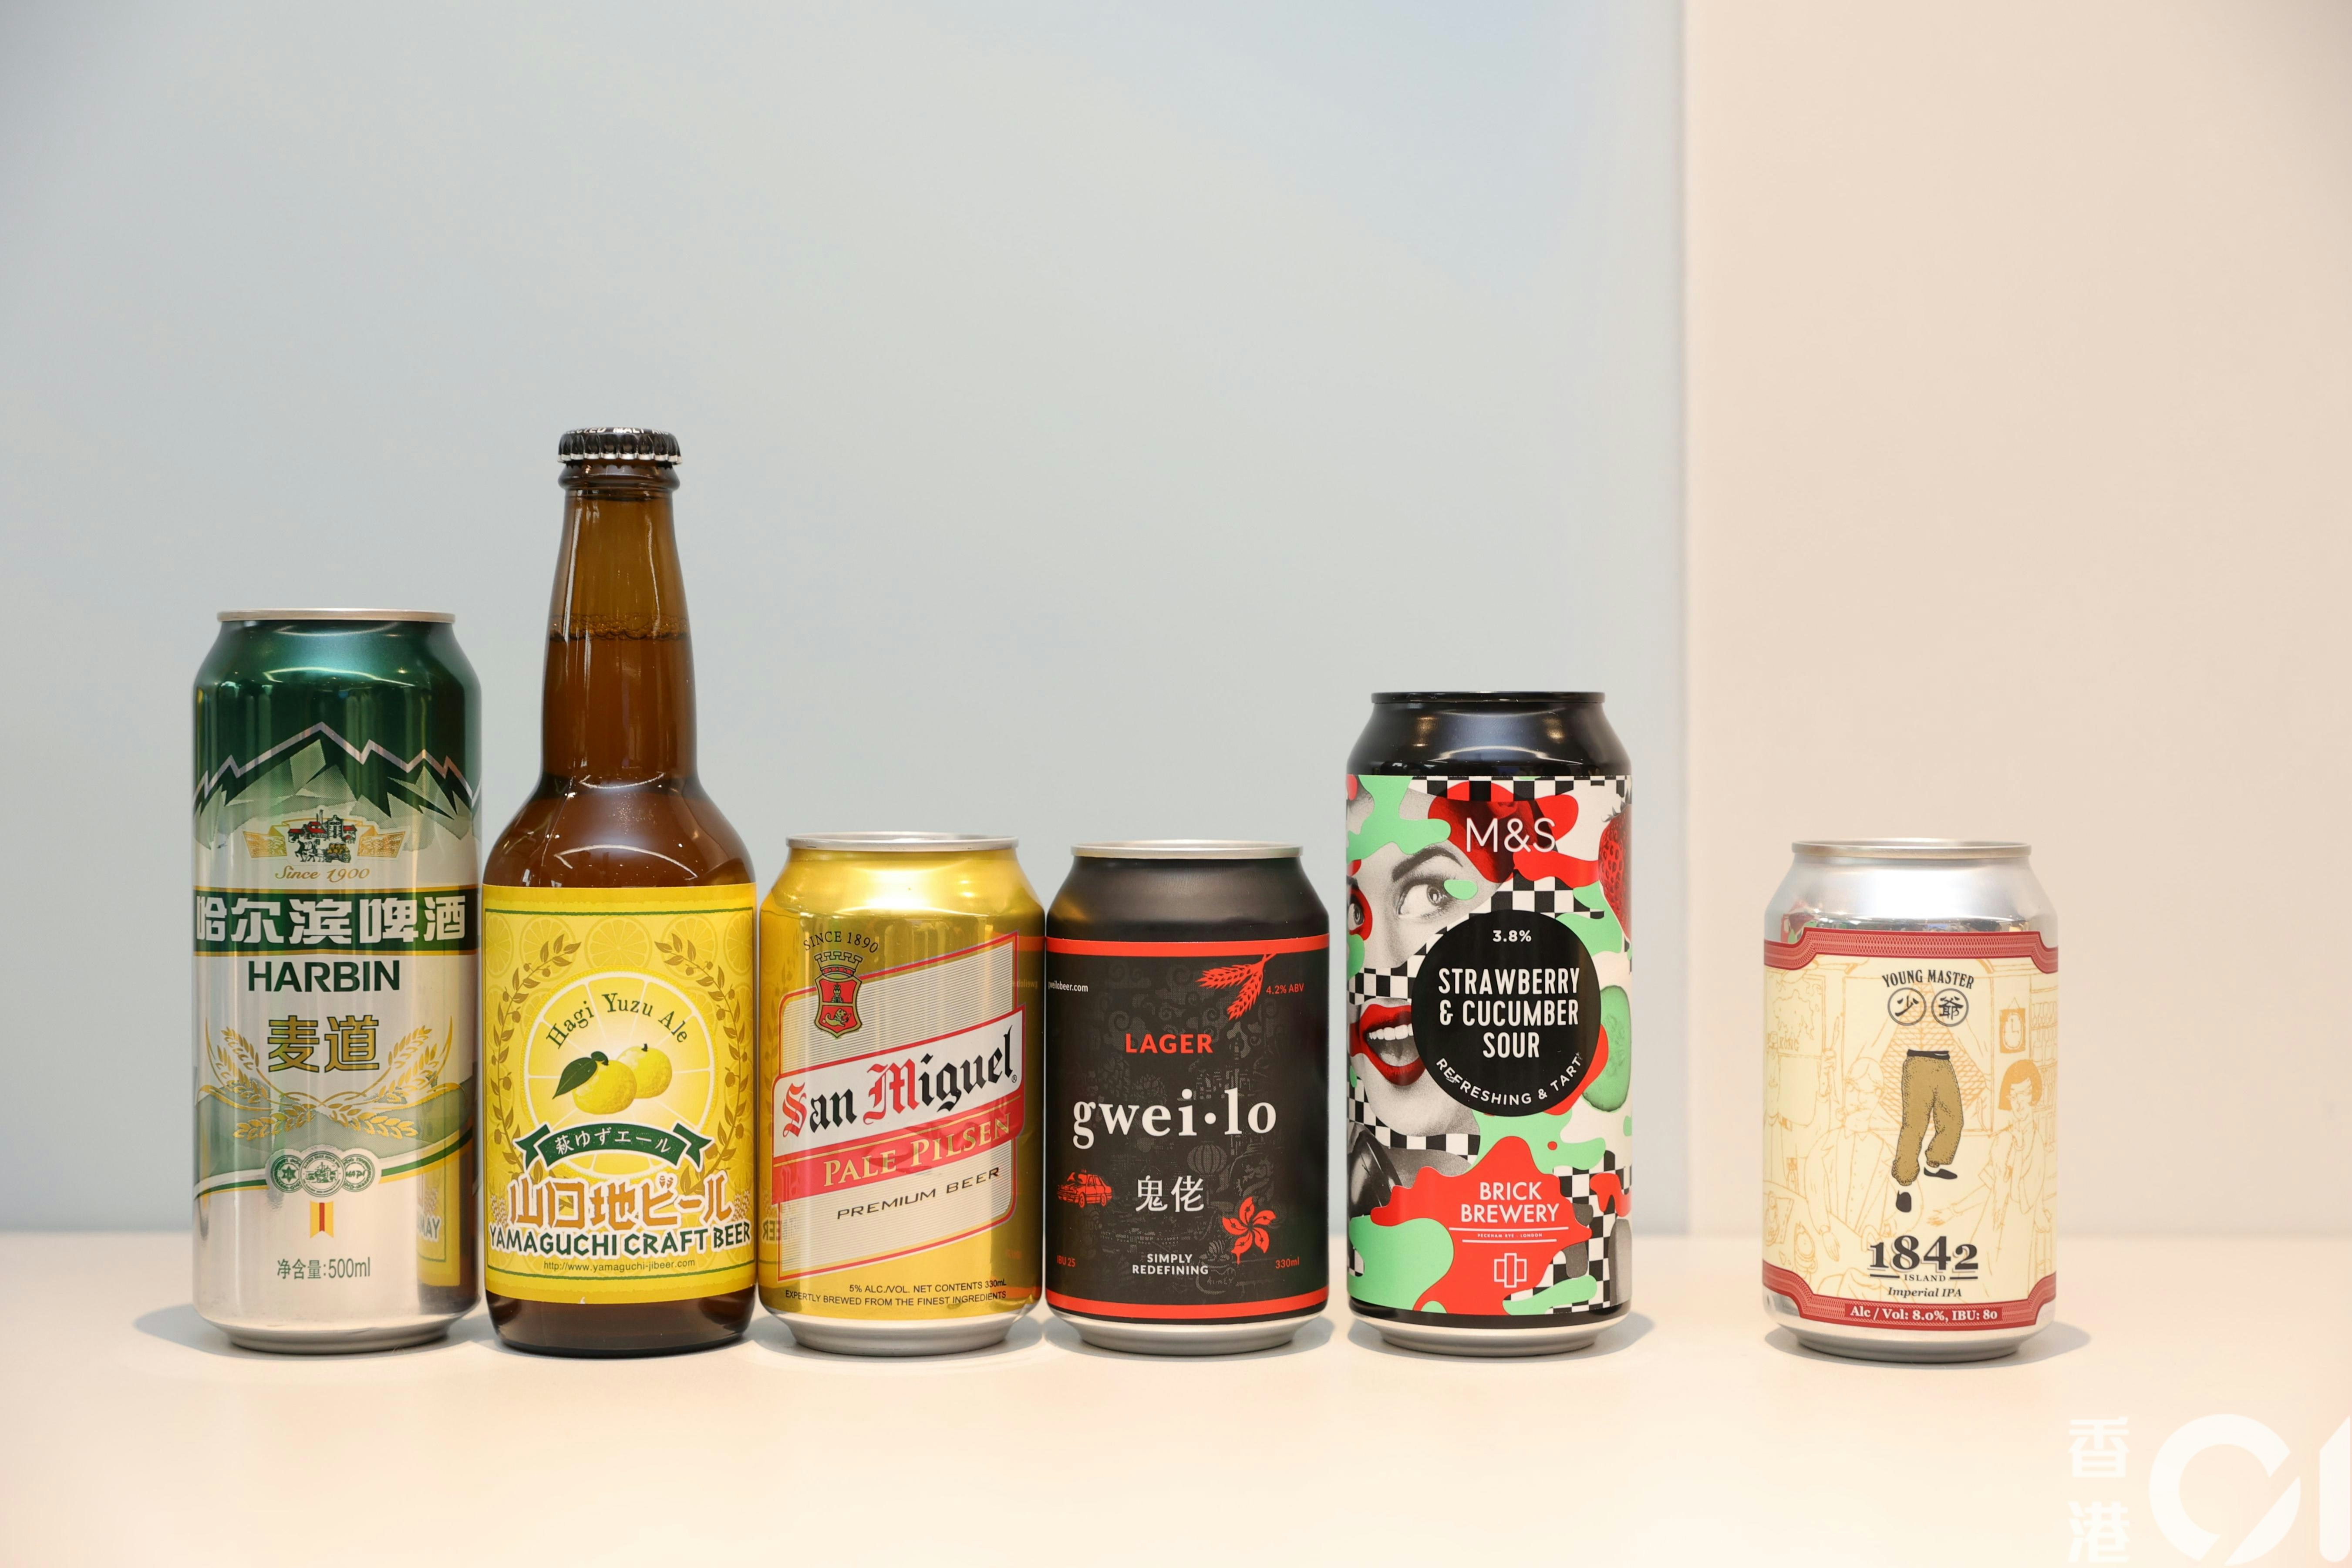 消费者委员会首次测试30款预先包装罐装或支装啤酒。（郑子峰摄）